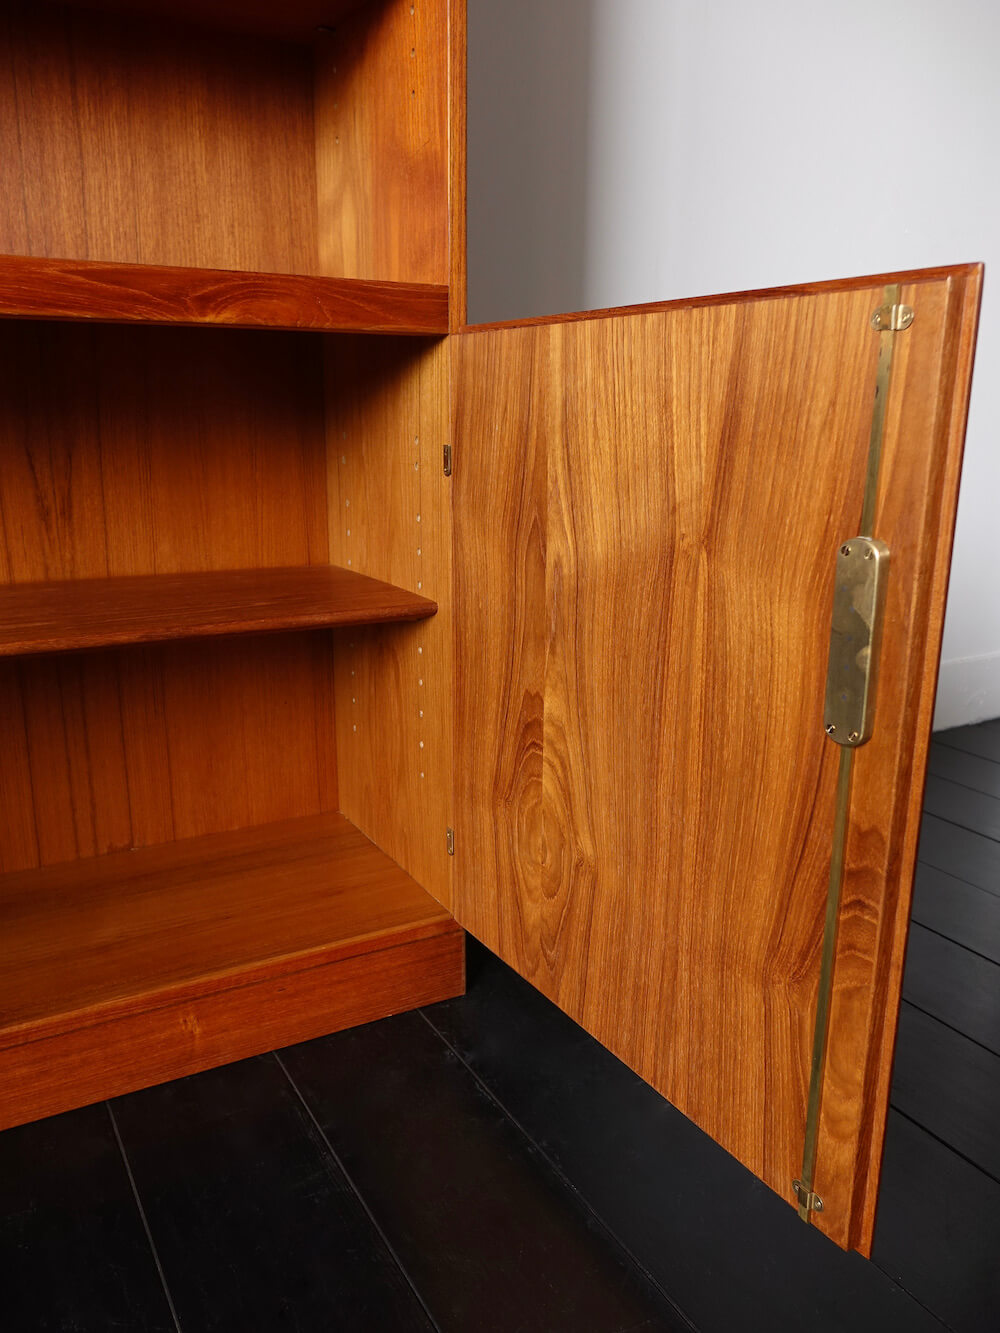 Book shelf cabinet by Borge Mogensen for Soborg in teak